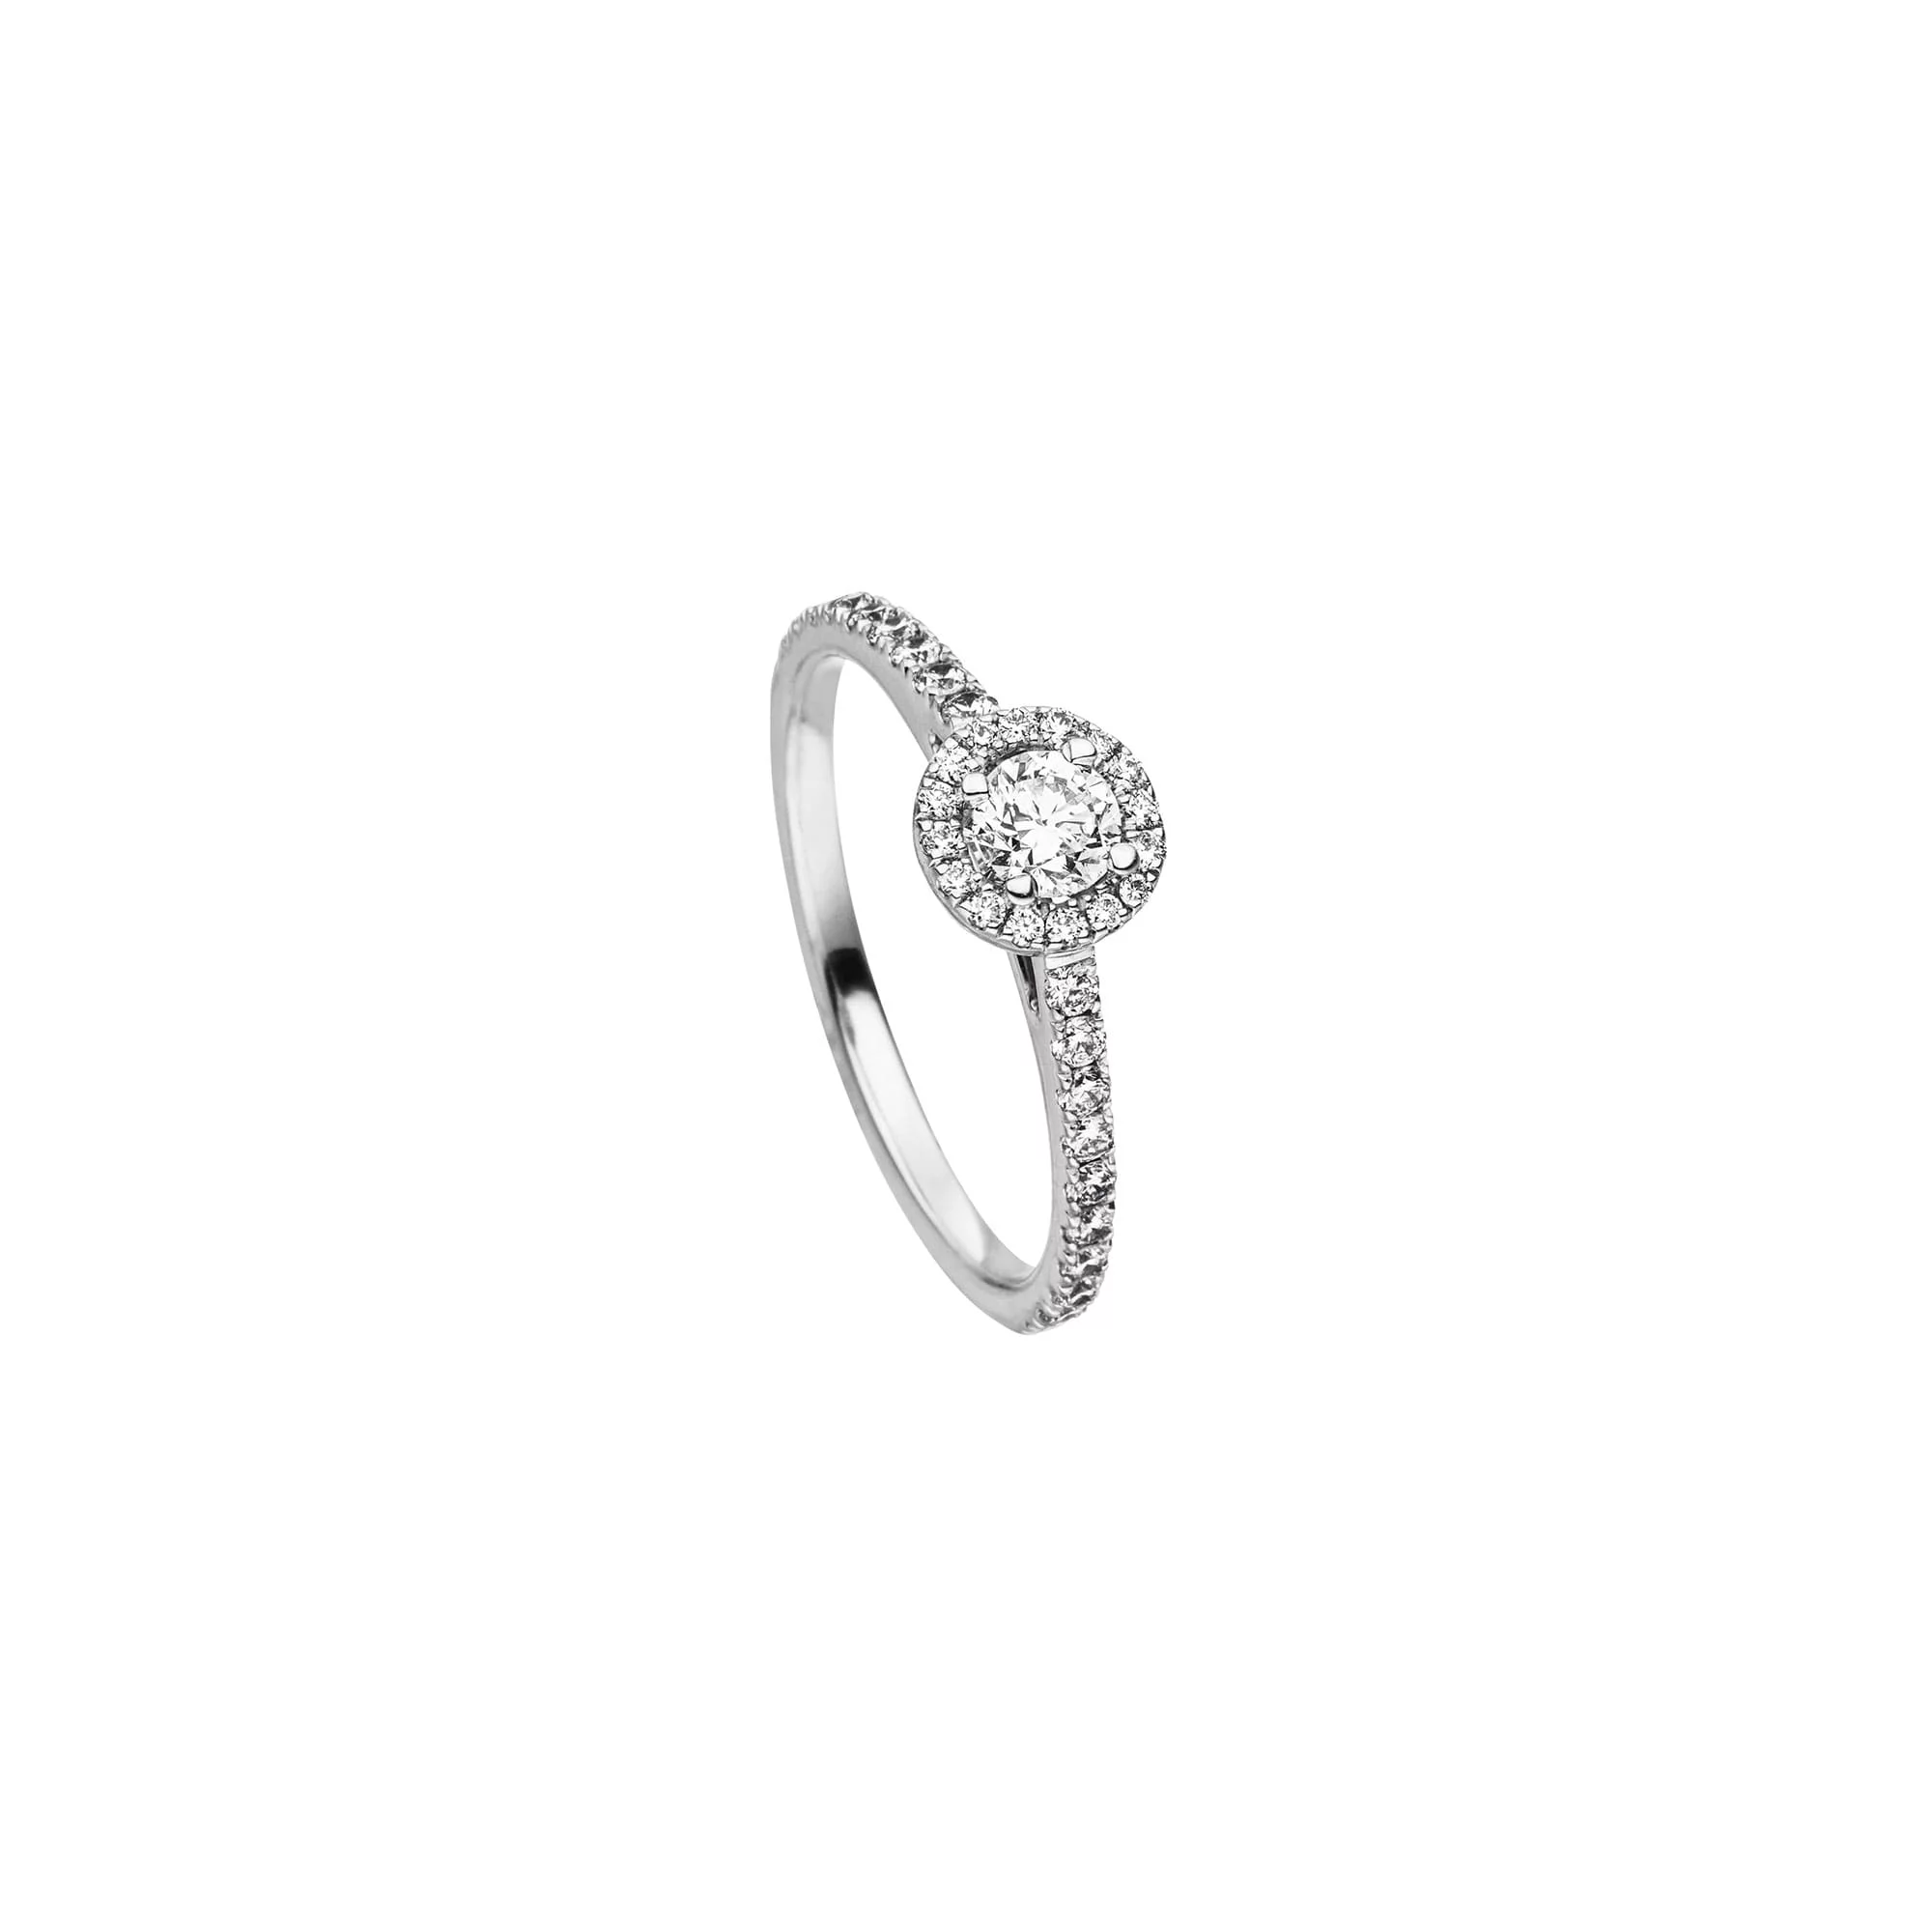 Platin Ring "Unika" mit Diamant im Cushion Schliff von Atelier Fridrich bei Juwelier Fridrich in München